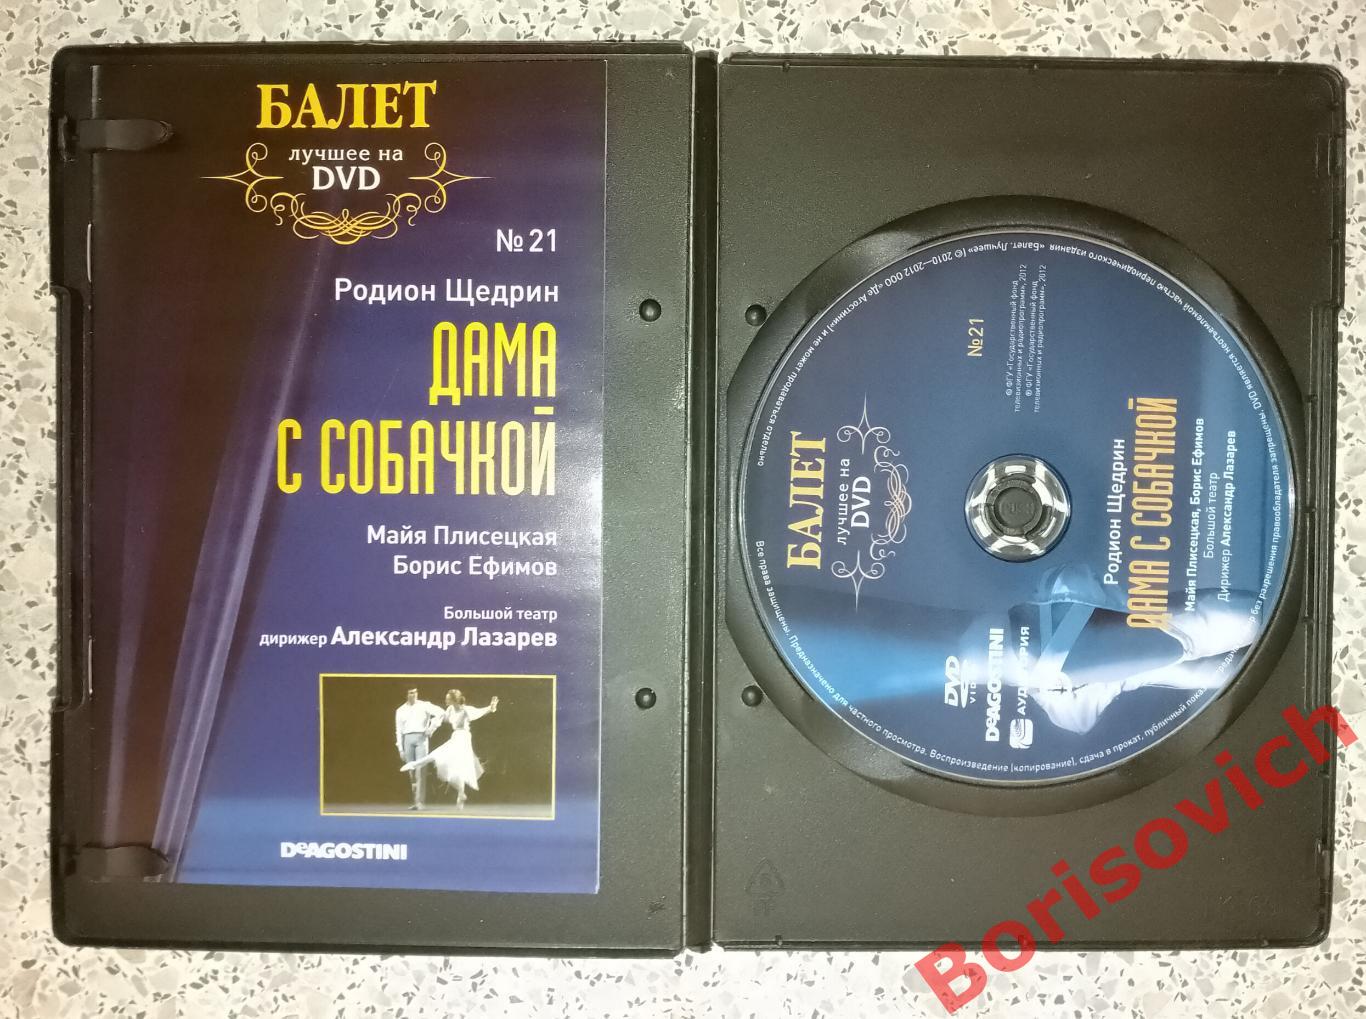 Балет лучшее на DVD Р. Щедрин Дама с собачкой 1